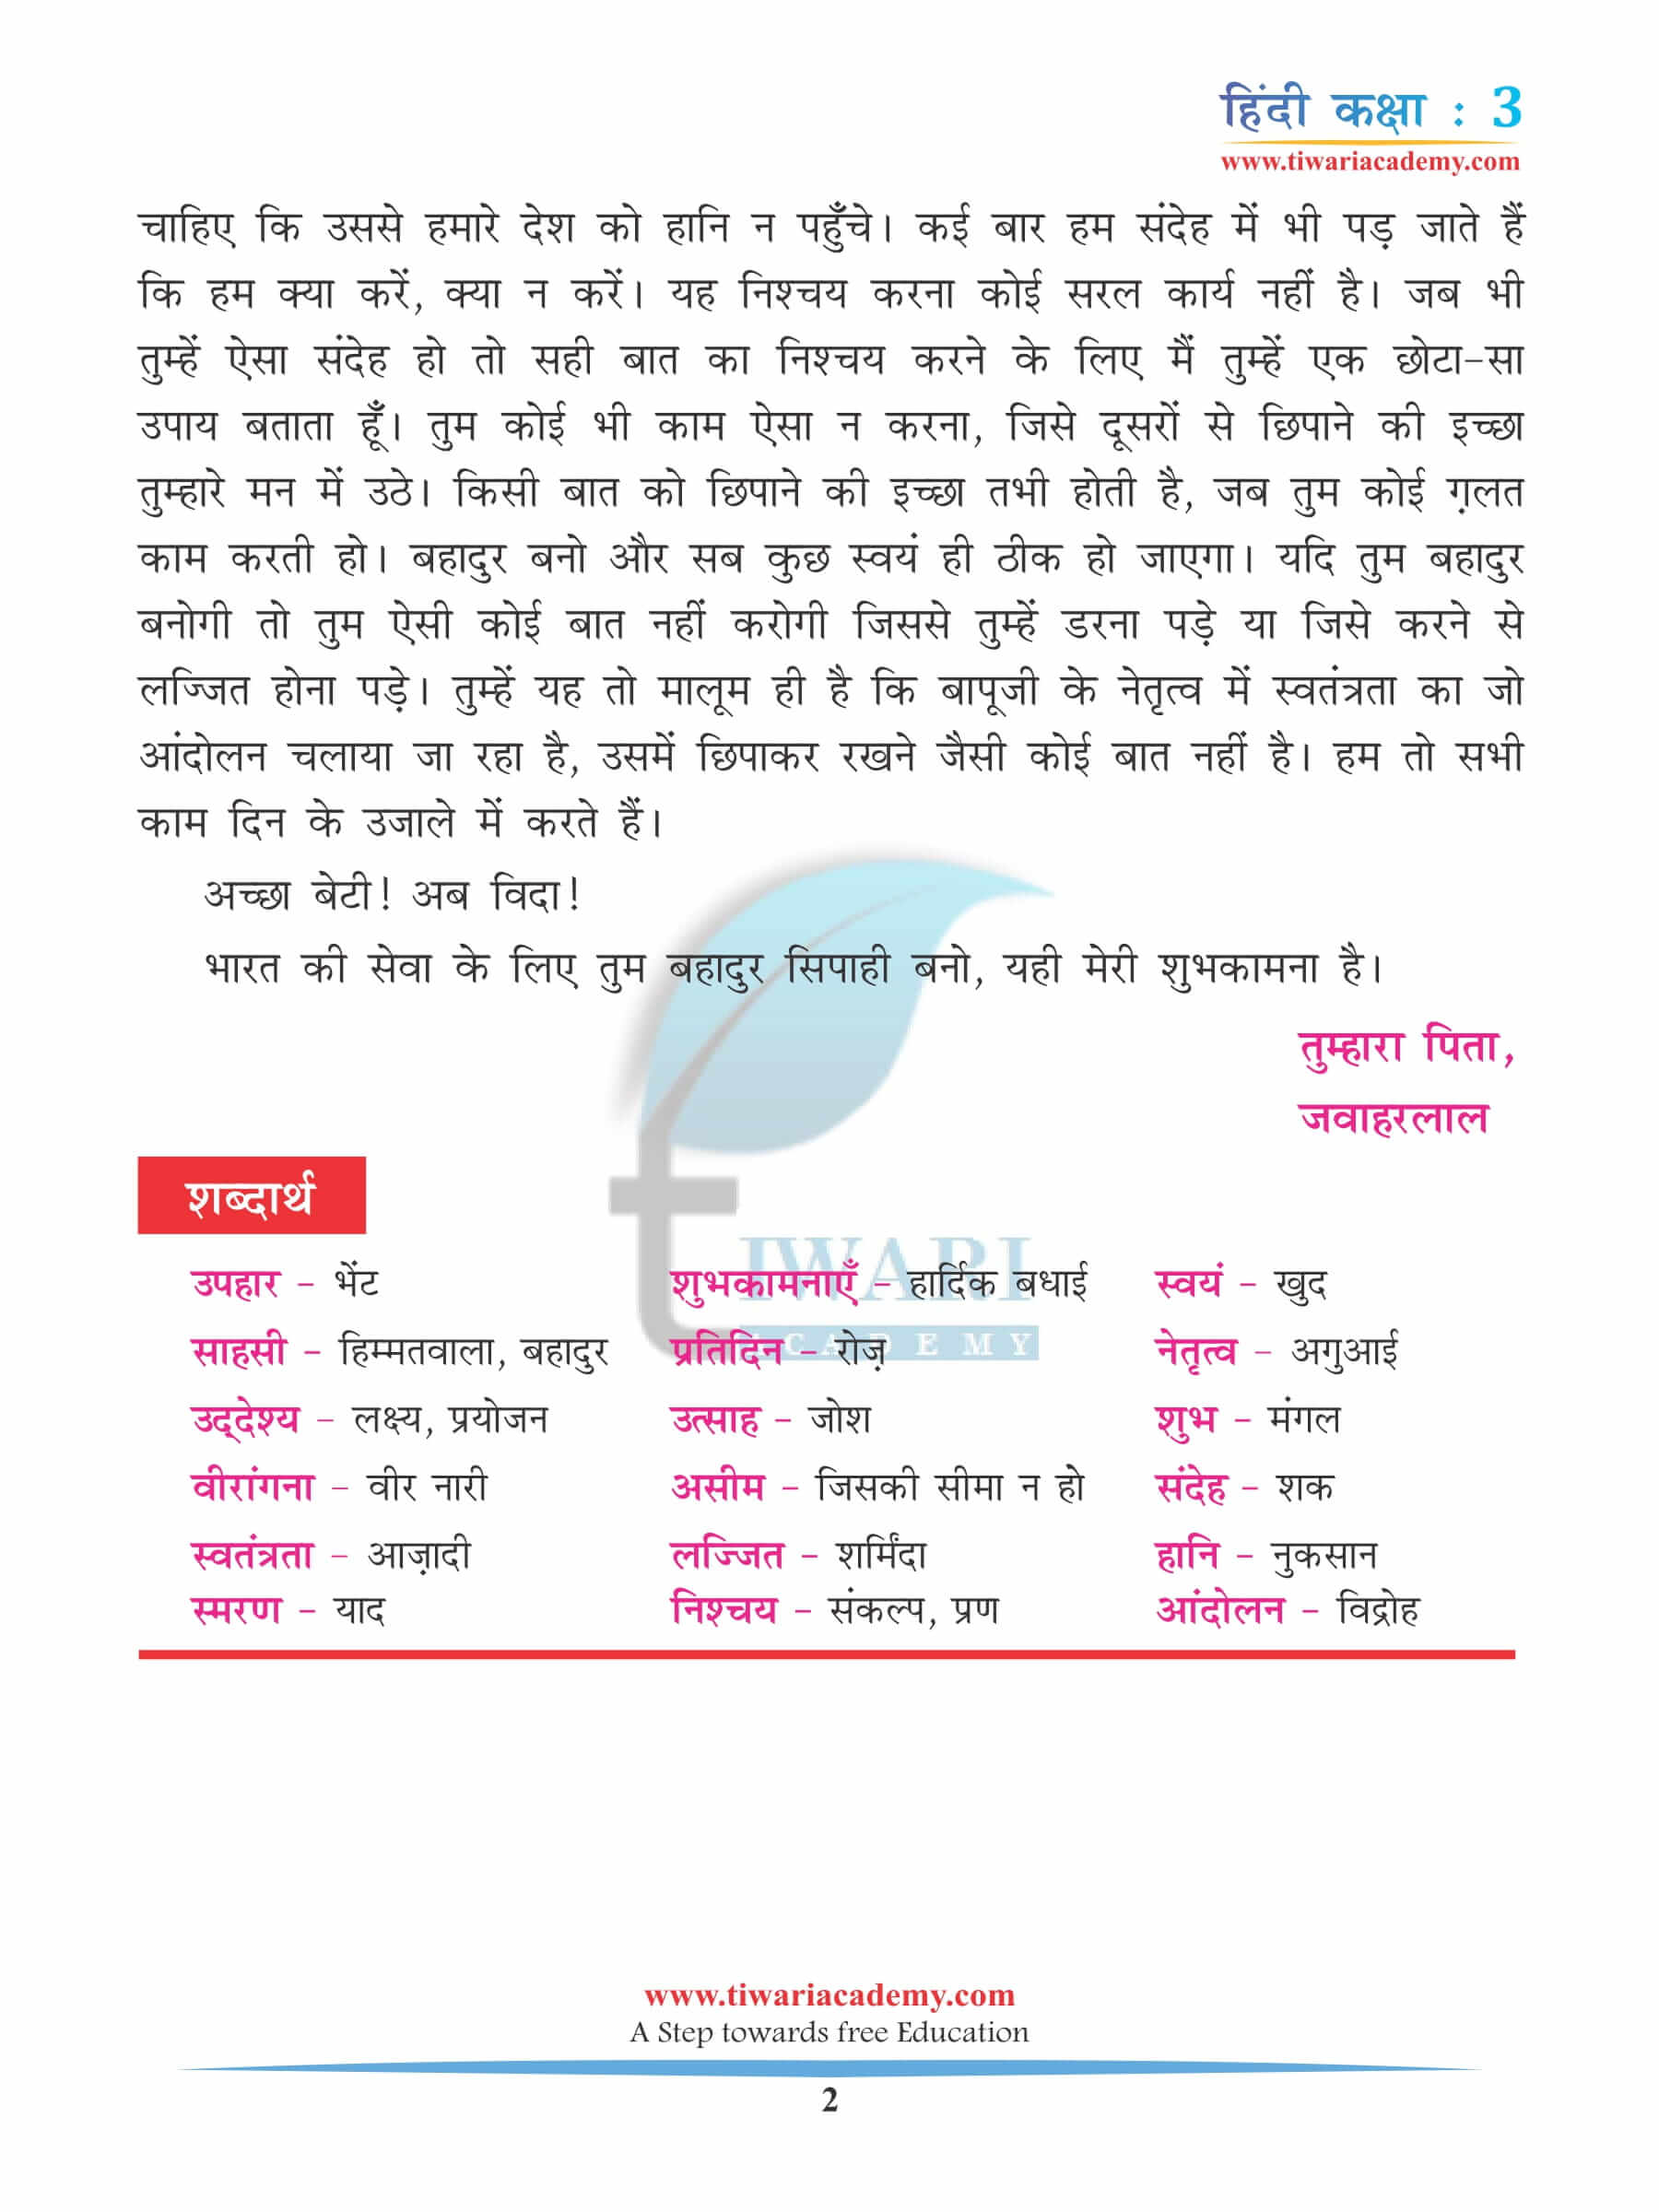 कक्षा 3 हिंदी अध्याय 9 अभ्यास के लिए किताब